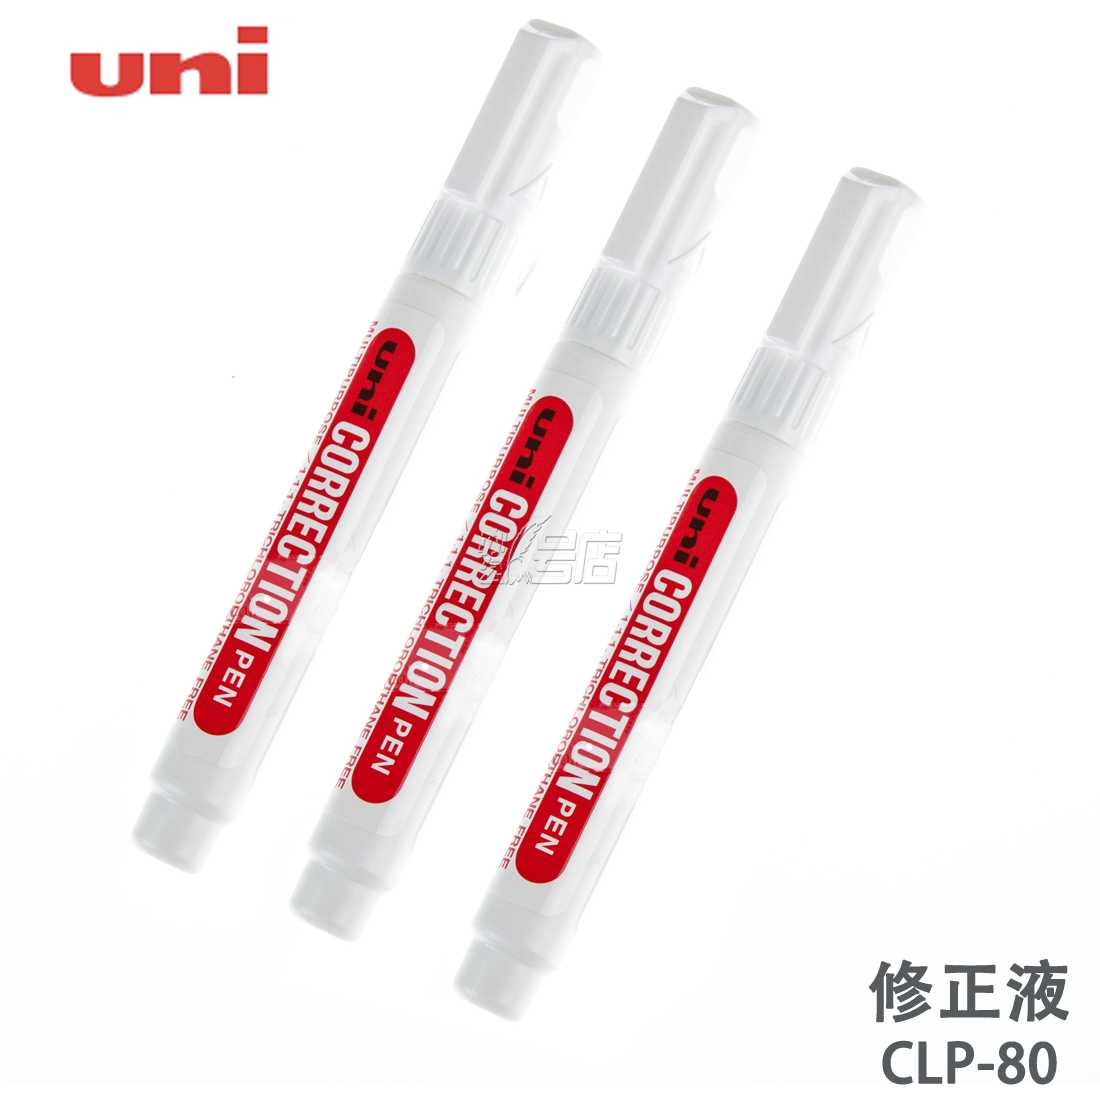 CLP-80 uni correction Pen